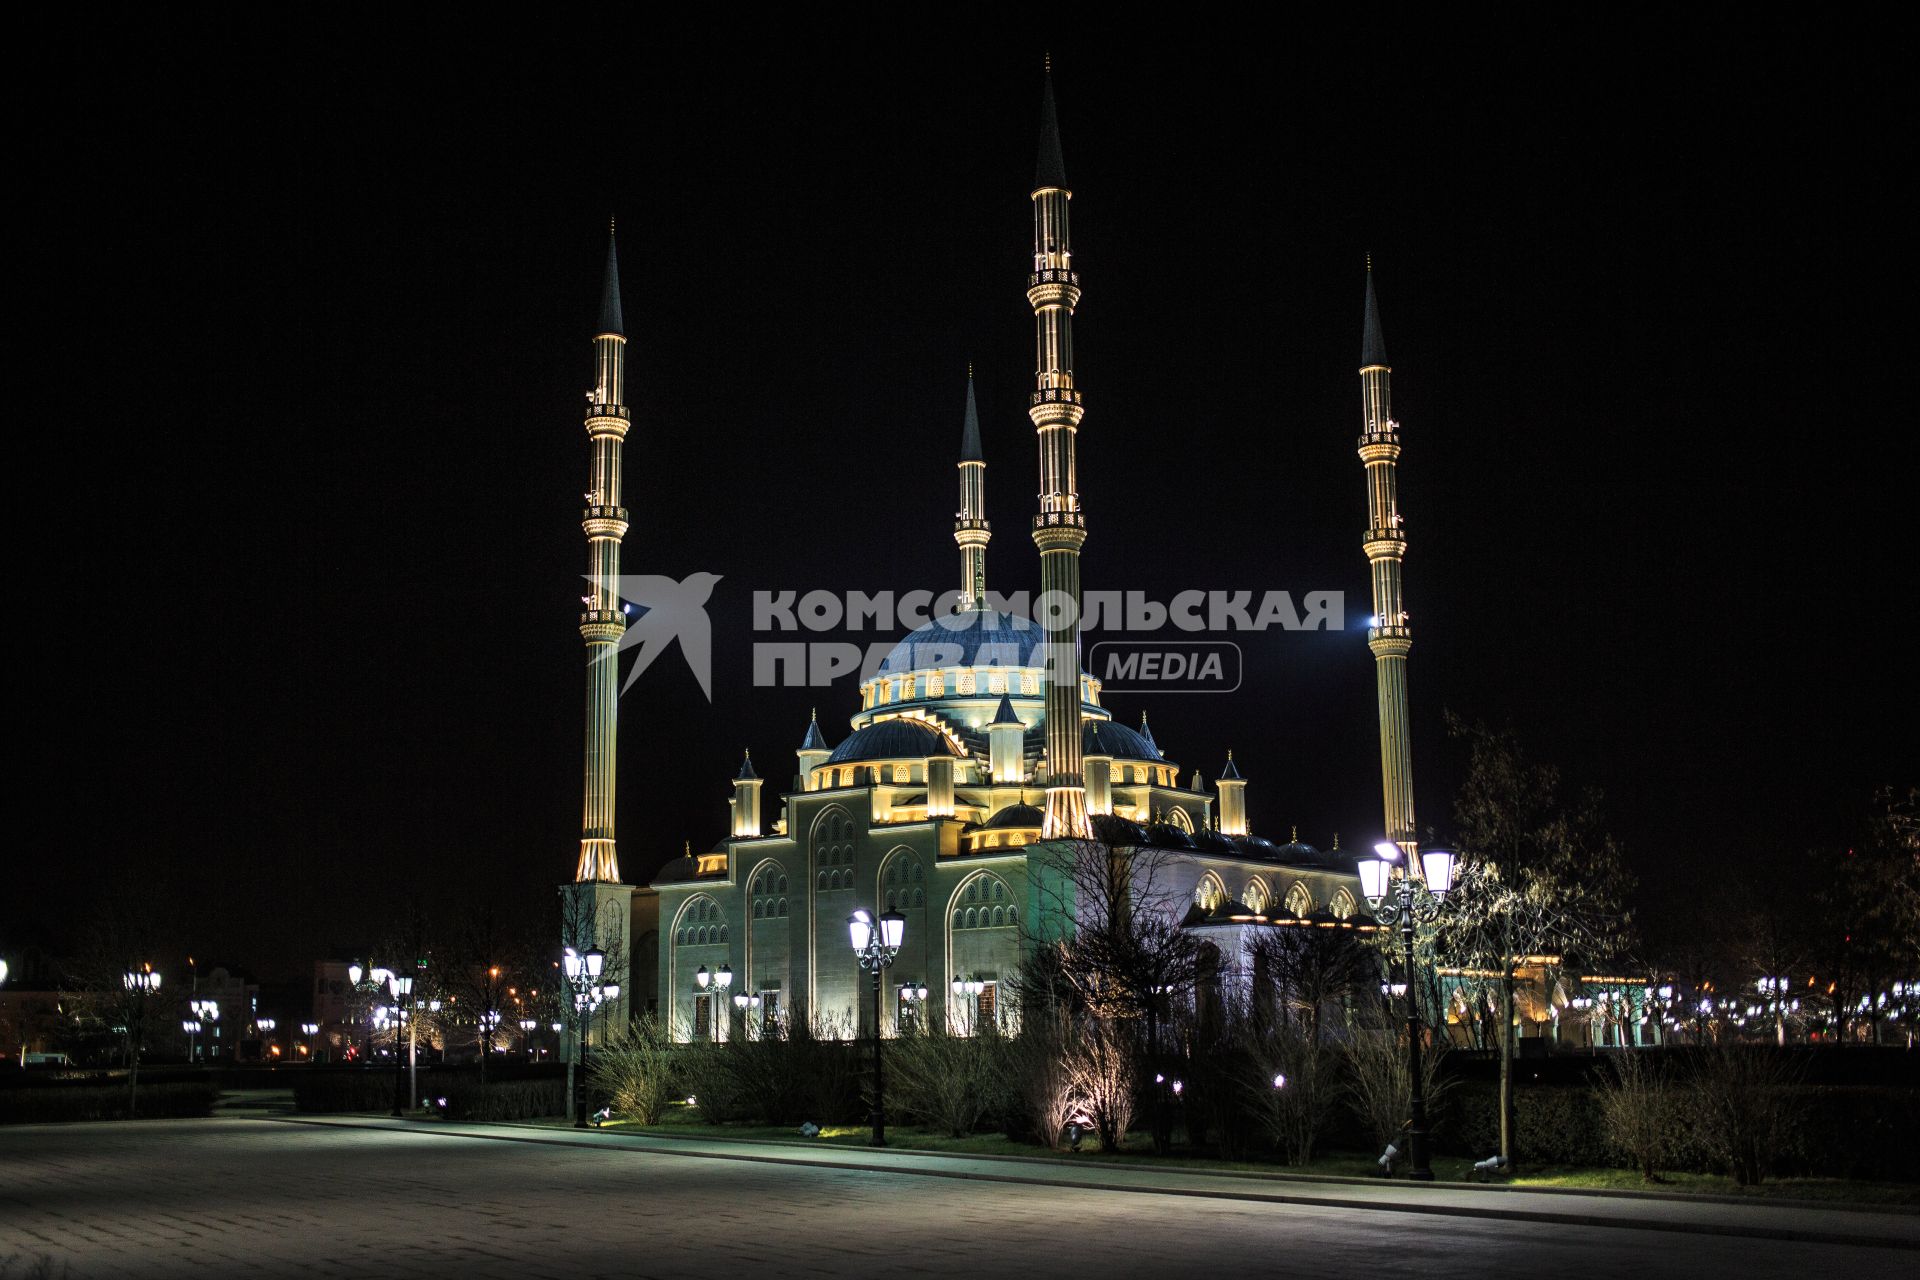 Мечеть \"Сердце Чечни\" в Грозном